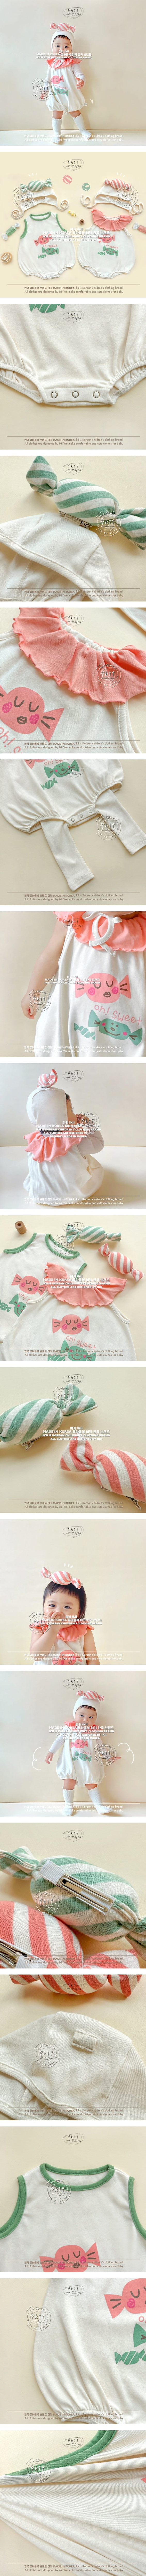 Ikii - Korean Baby Fashion - #babylifestyle - Candy Set - 2